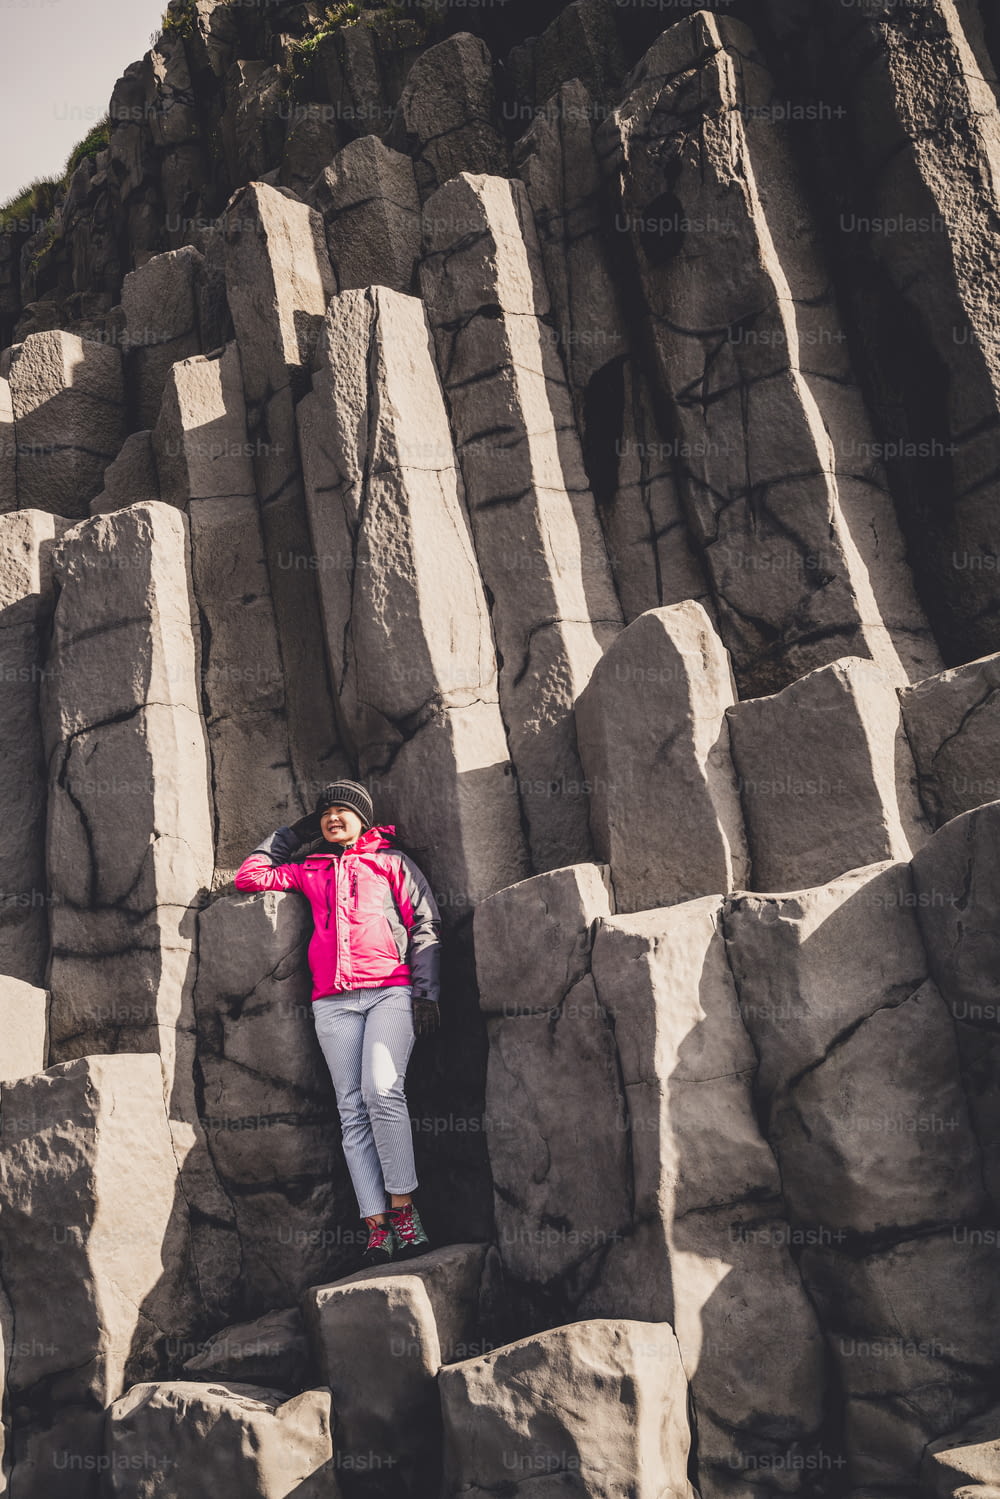 El viajero viaja a una formación rocosa volcánica única en la playa de arena negra de Islandia ubicada cerca del pueblo de Vik i myrdalin en el sur de Islandia. Las rocas columnares hexagonales atraen a los turistas que visitan Islandia.